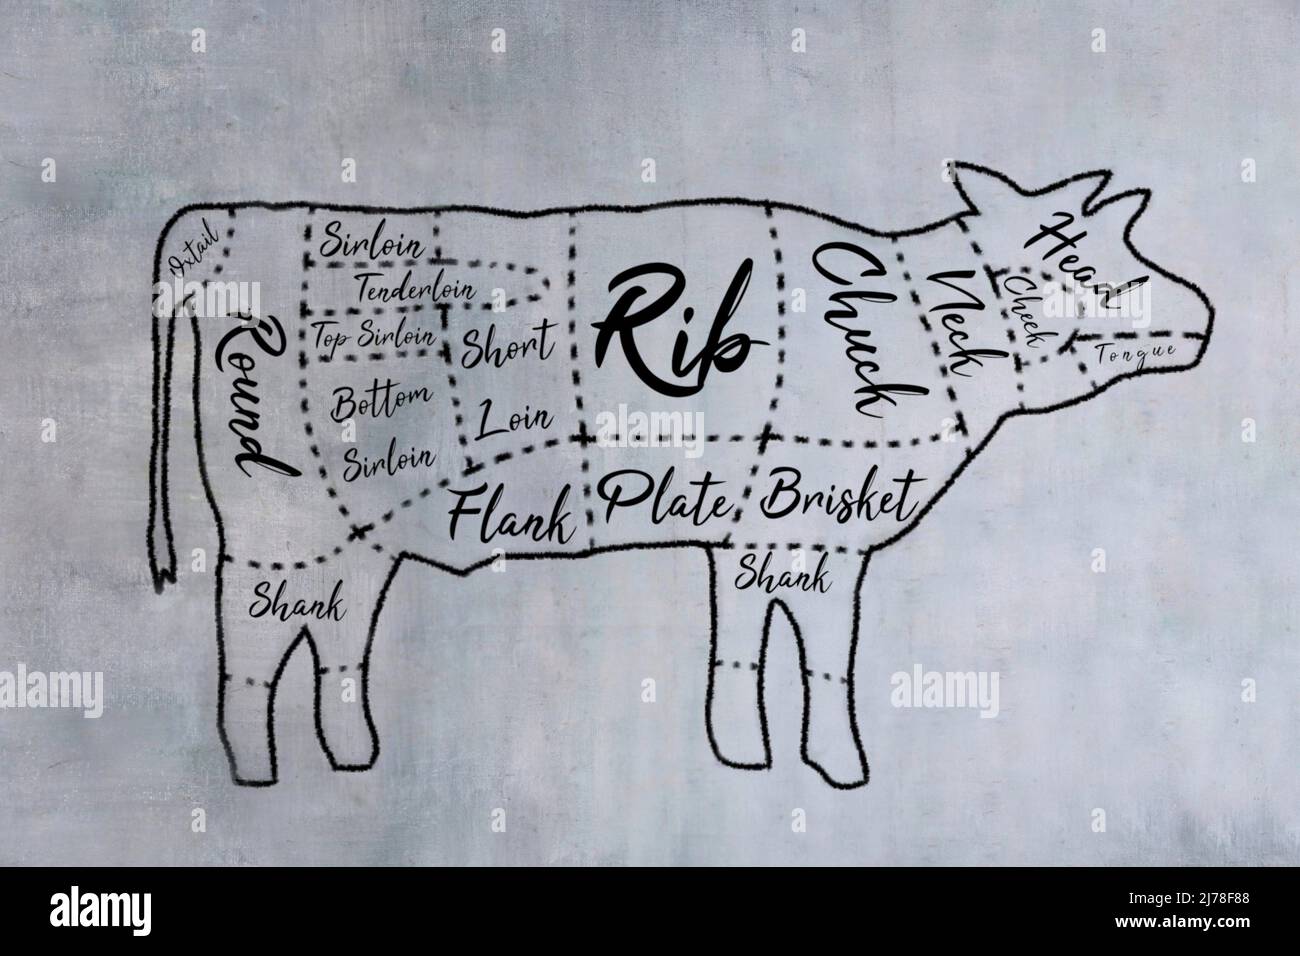 Imagen dibujada a mano del diagrama de cortes de carne de carnicero en la pizarra. Foto de stock